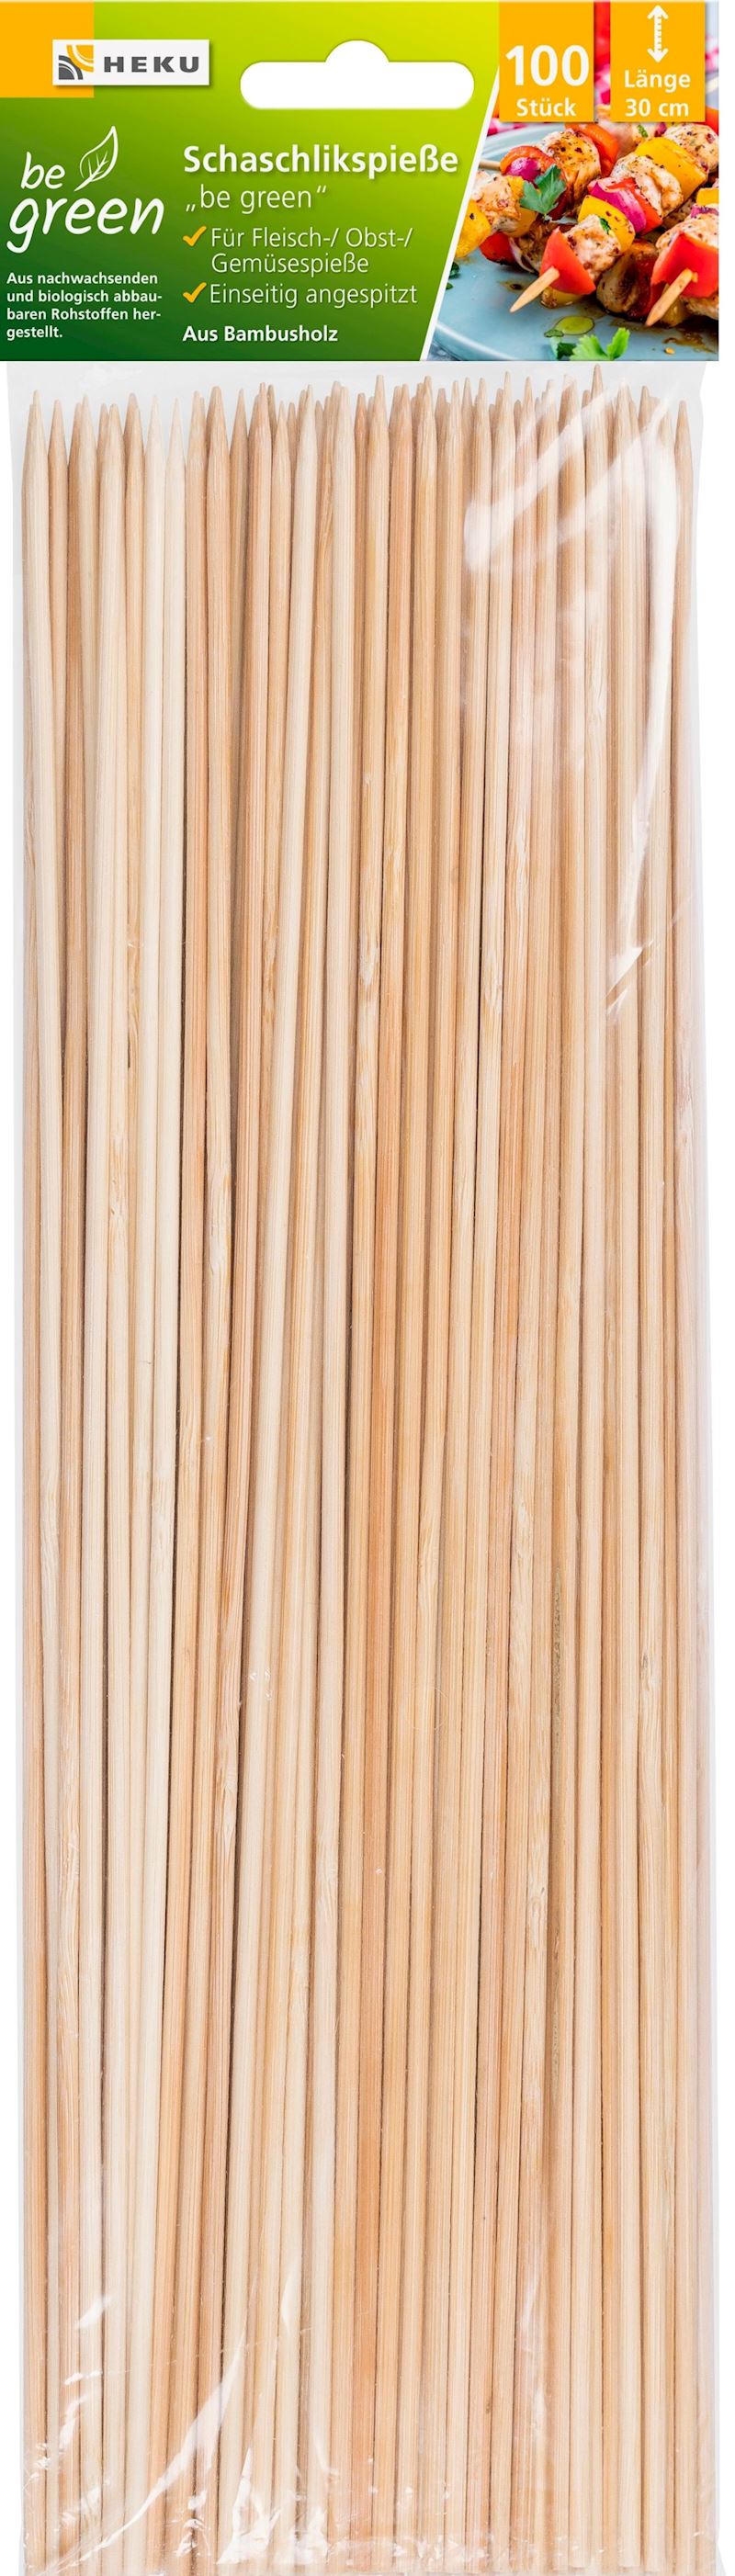 Schaschlikspiesse 100 Stk. 30cm aus Bambus 3mm DM